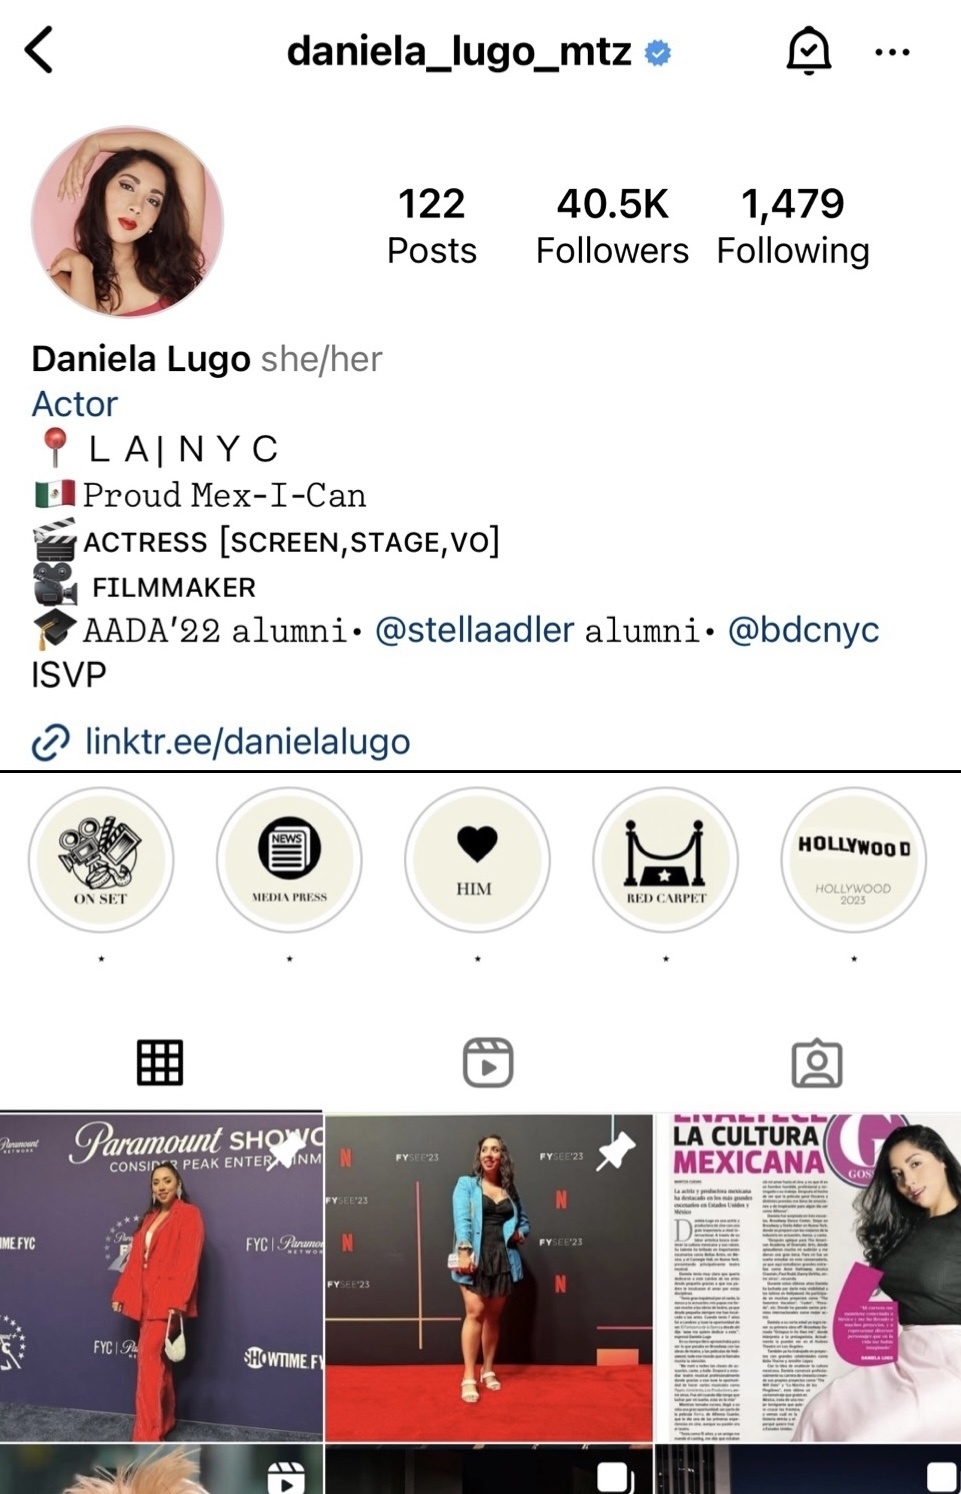 Daniela&#x27;s Instagram account @daniela_lugo_mtz